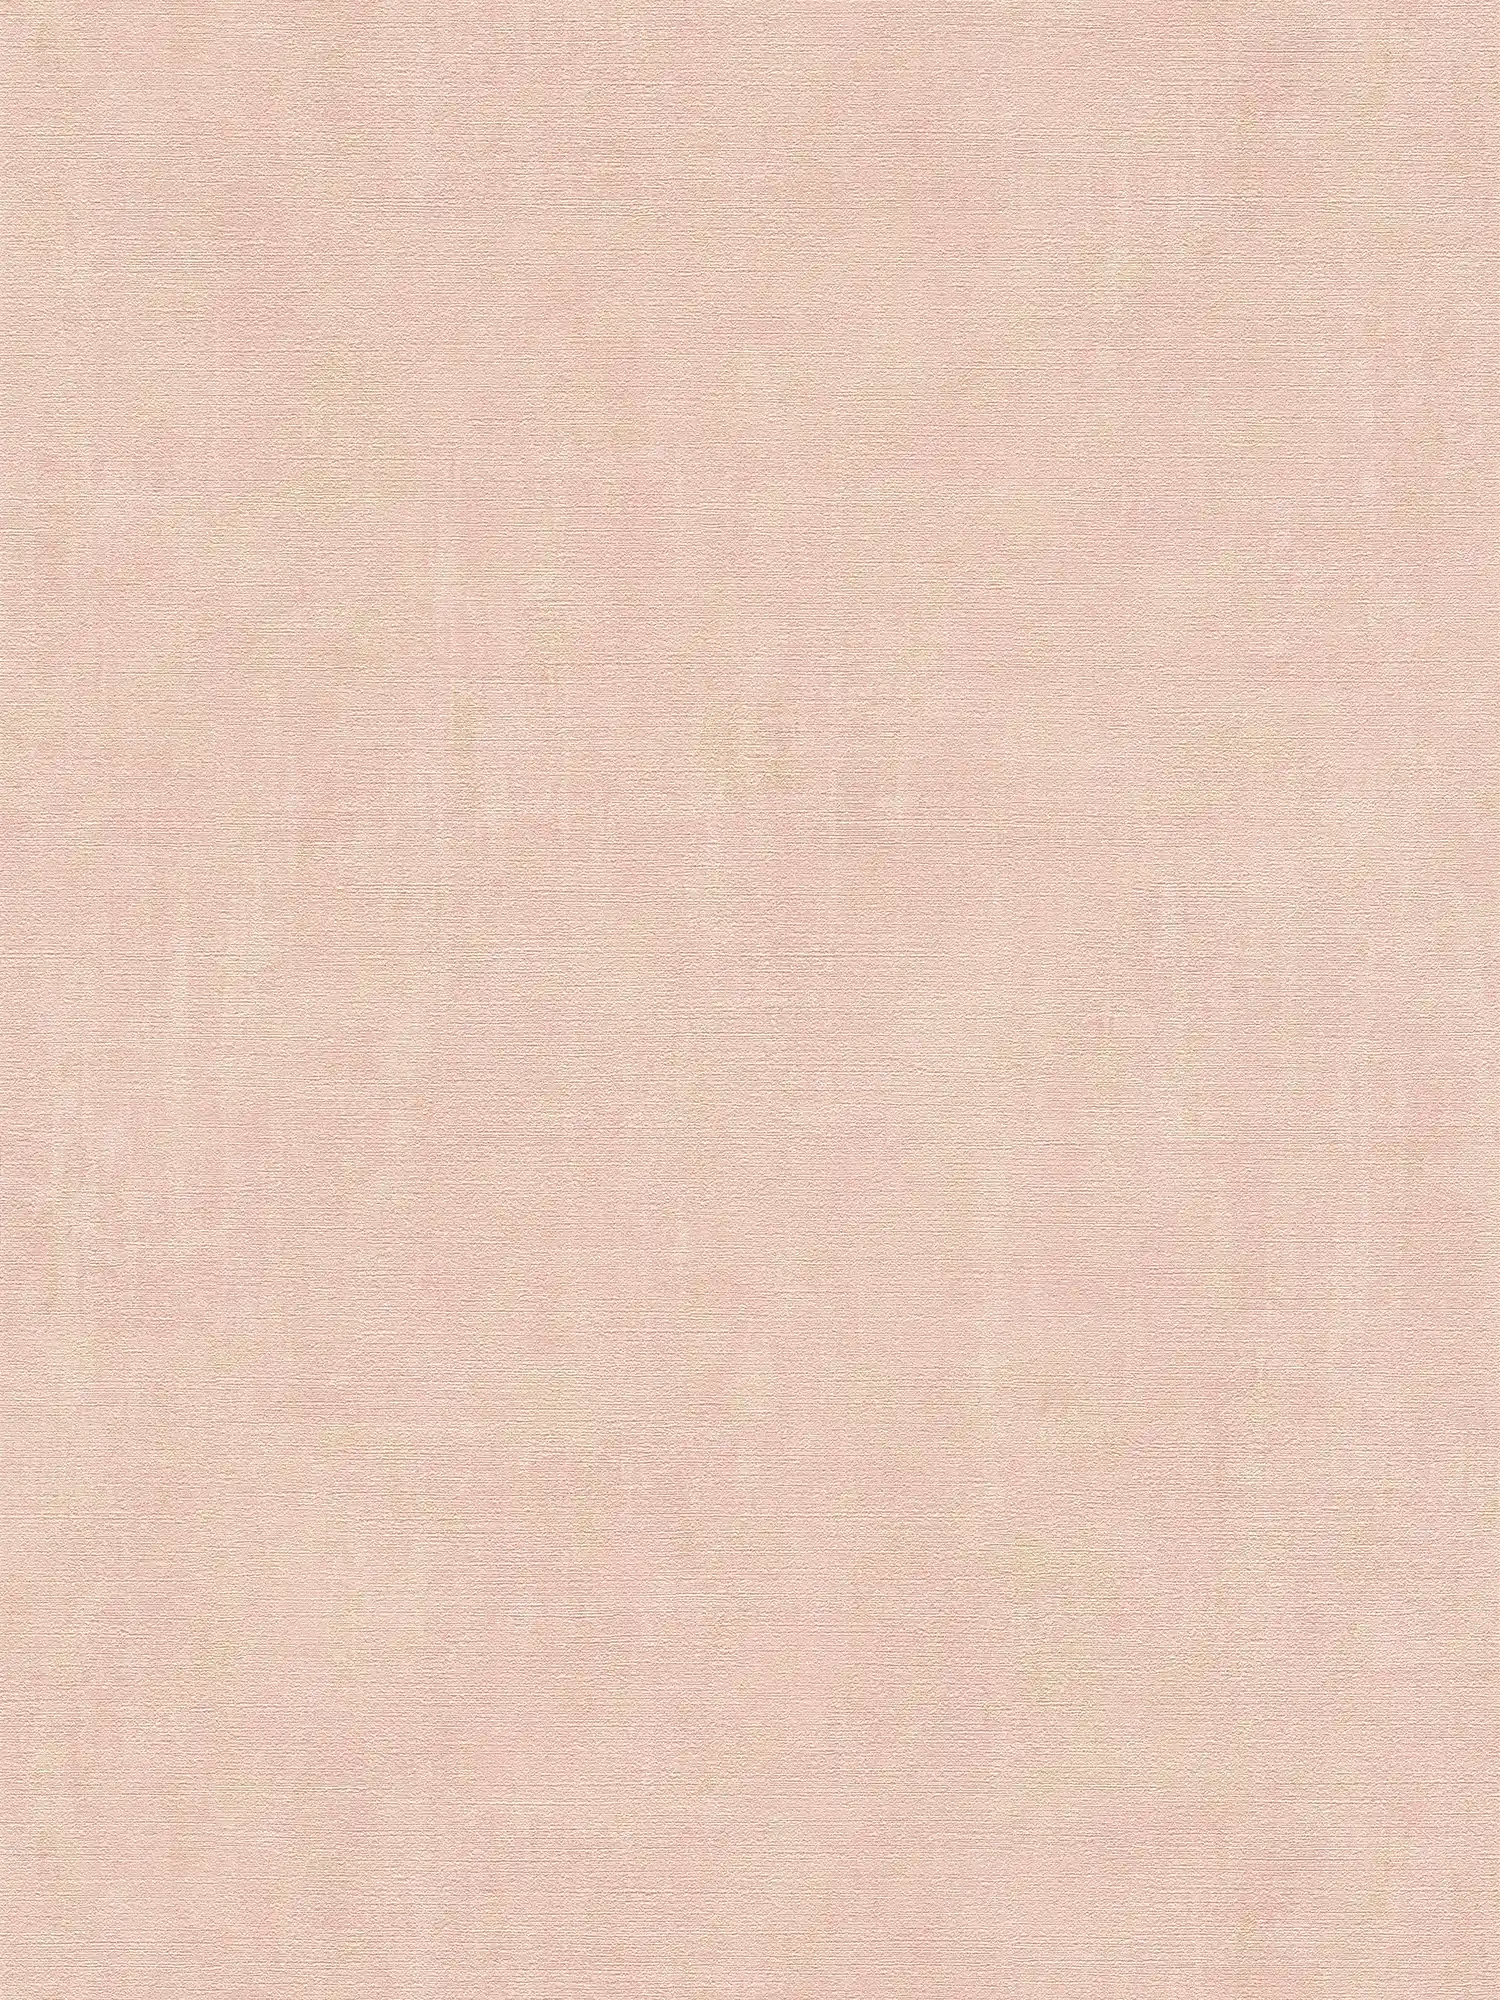 Carta da parati rosa con accenti dorati effetto metallizzato screziato - metallizzata, rosa
